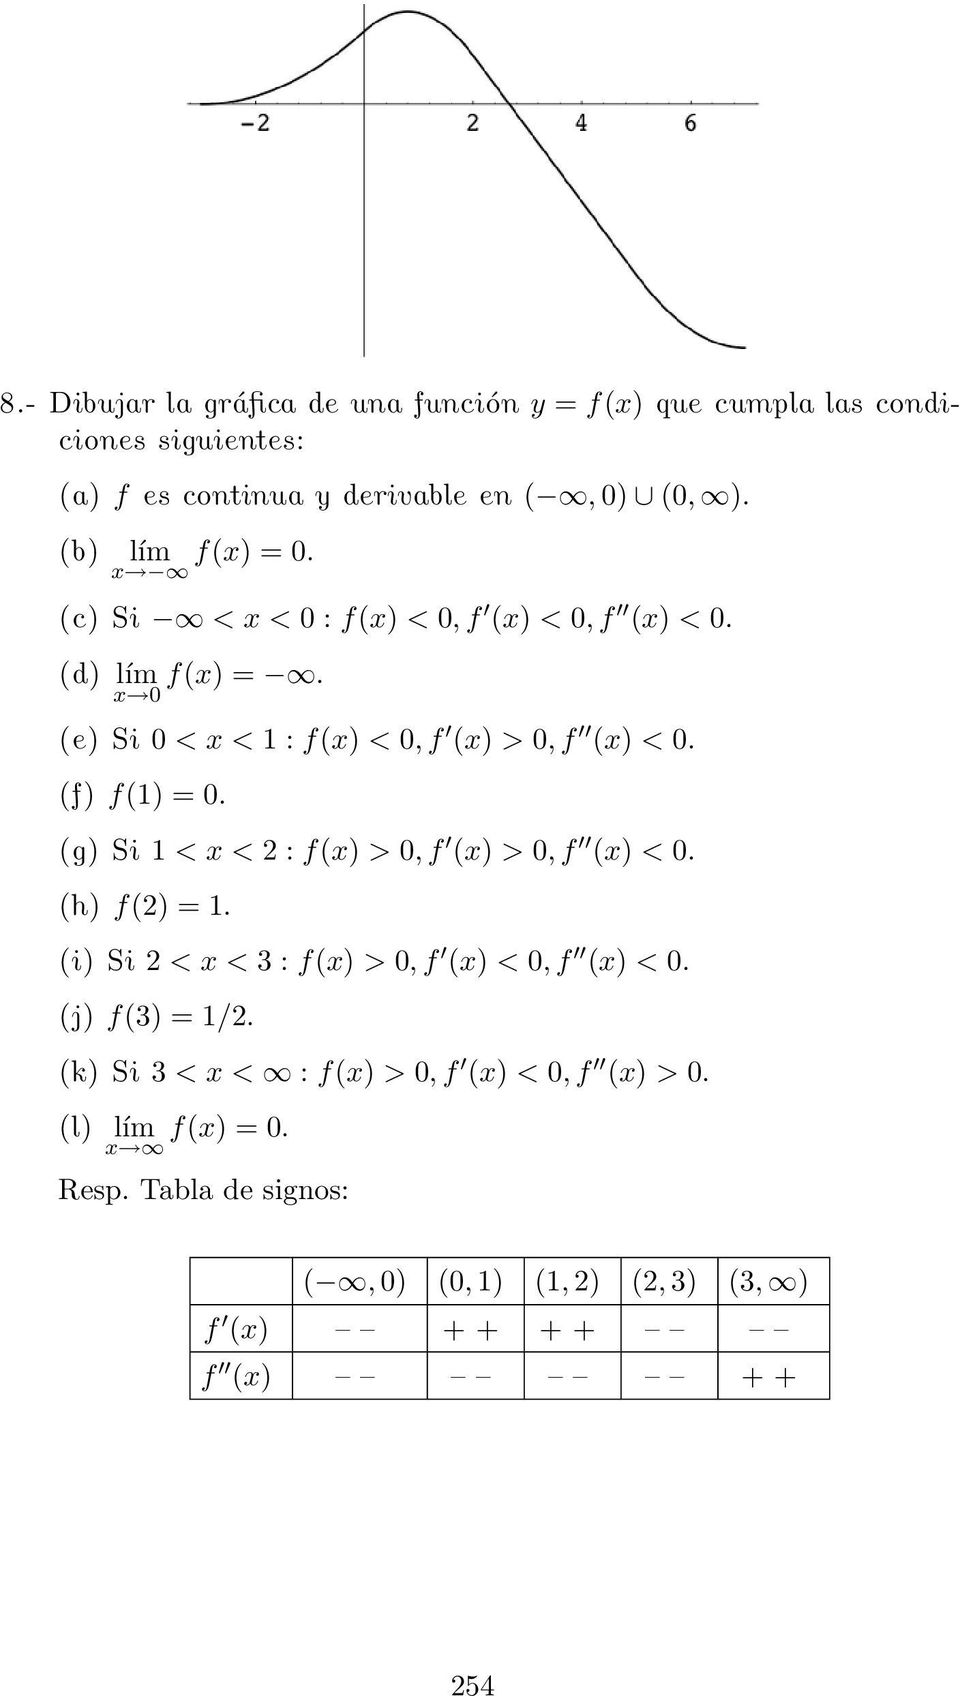 (f) f(1) = 0. (g) Si 1 <x<2:f(x) > 0,f (x) > 0,f (x) < 0. (h) f(2) = 1. (i) Si 2 <x<3:f(x) > 0,f (x) < 0,f (x) < 0. (j) f(3) = 1/2.